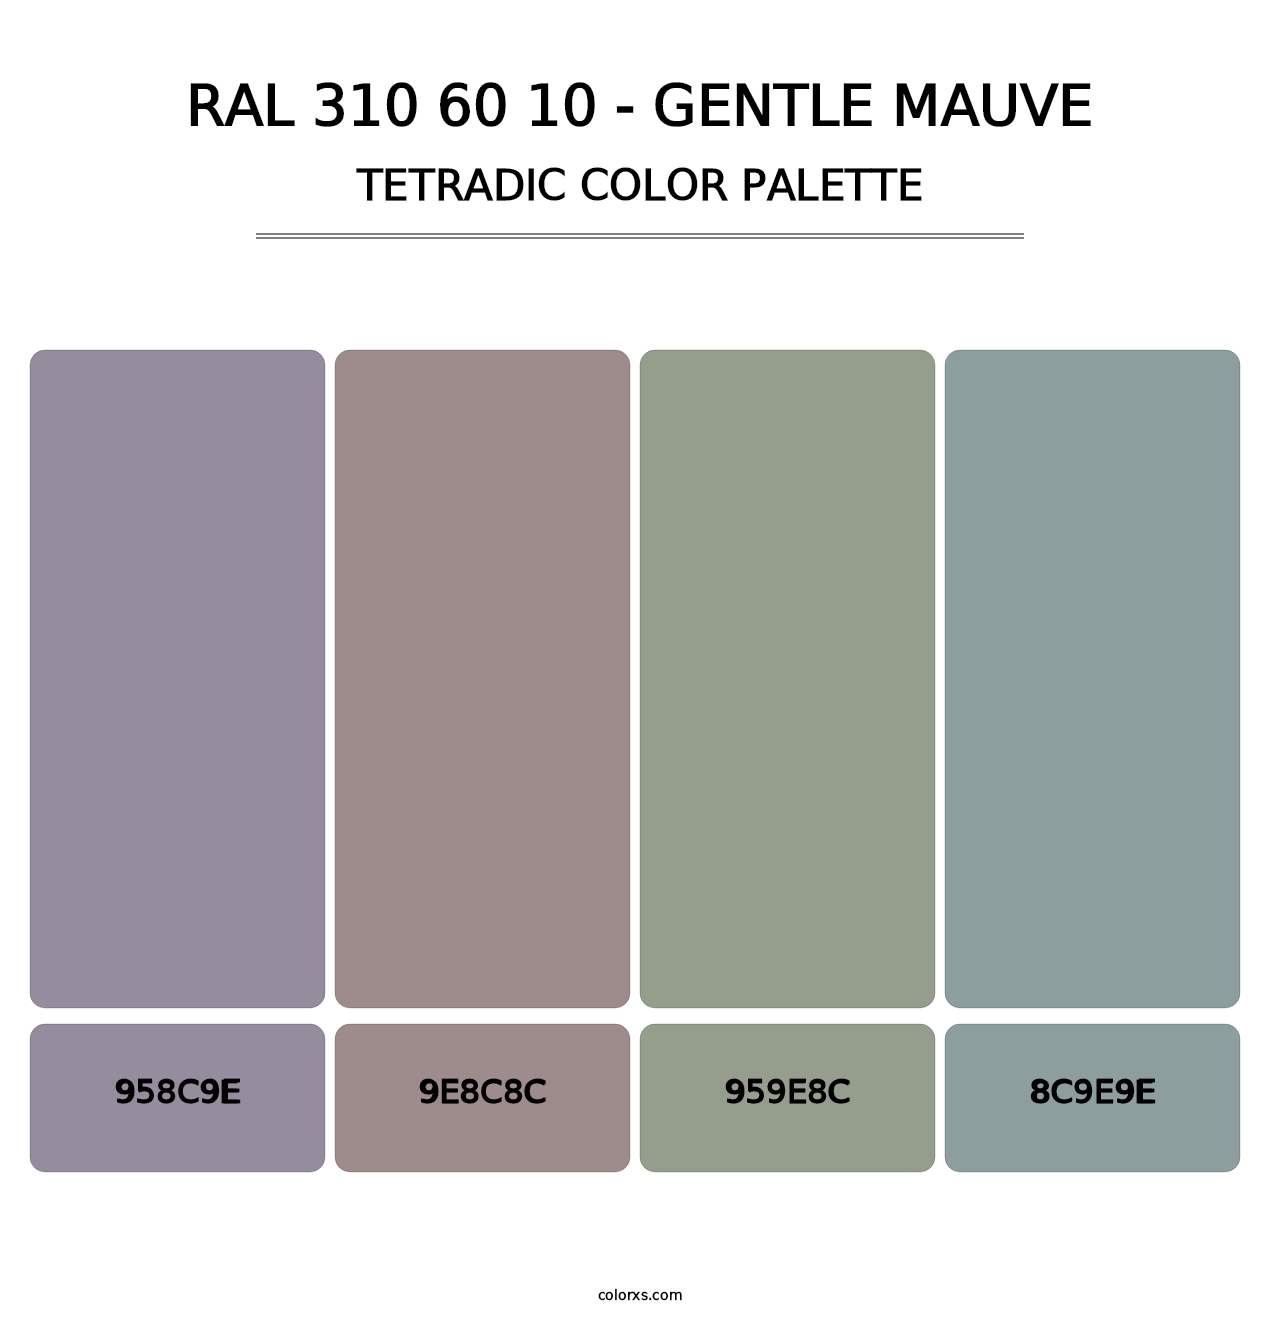 RAL 310 60 10 - Gentle Mauve - Tetradic Color Palette